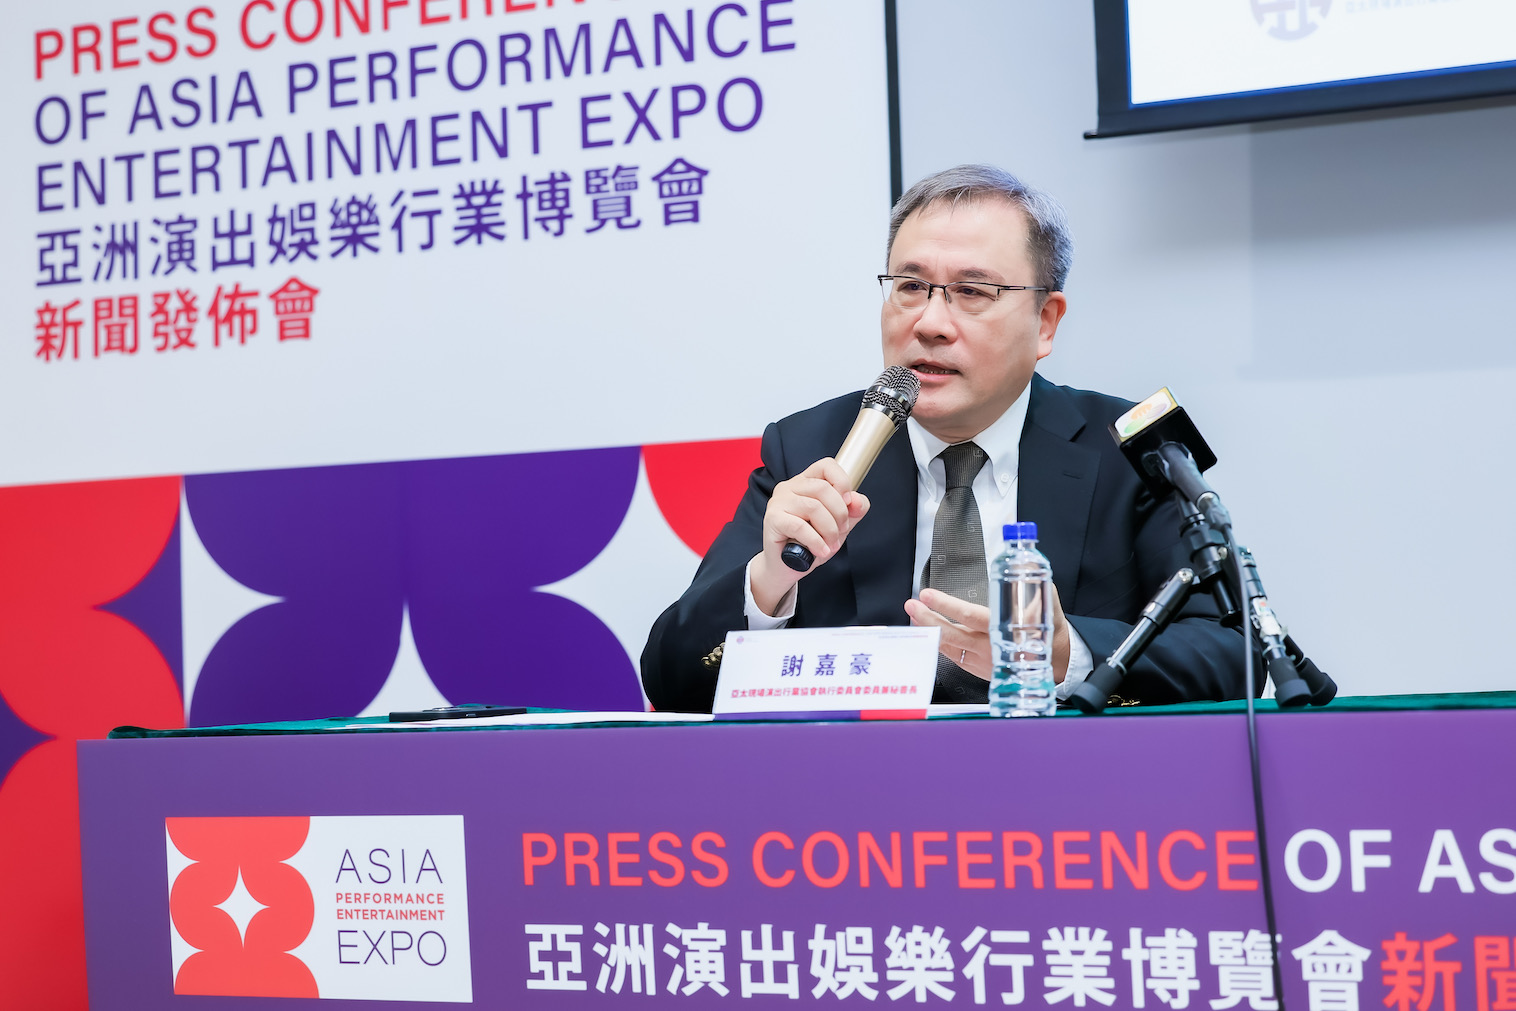 Macau recebe primeira edição da “Asia Performance Entertainment Expo”